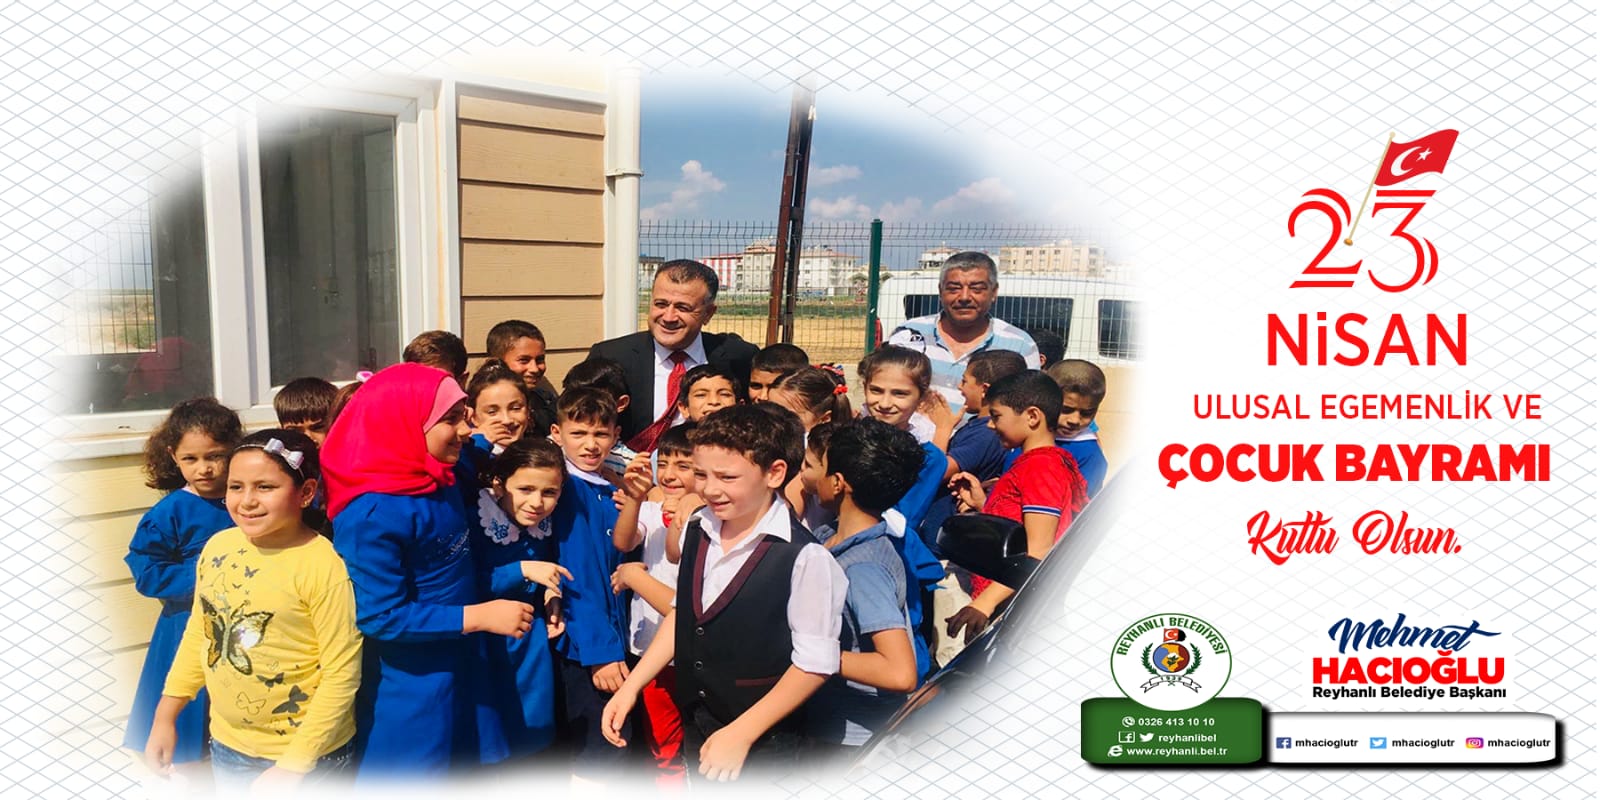 Hacıoğlu: Gazi meclisimizin kuruluşunun 102. Yılı kutlu olsun